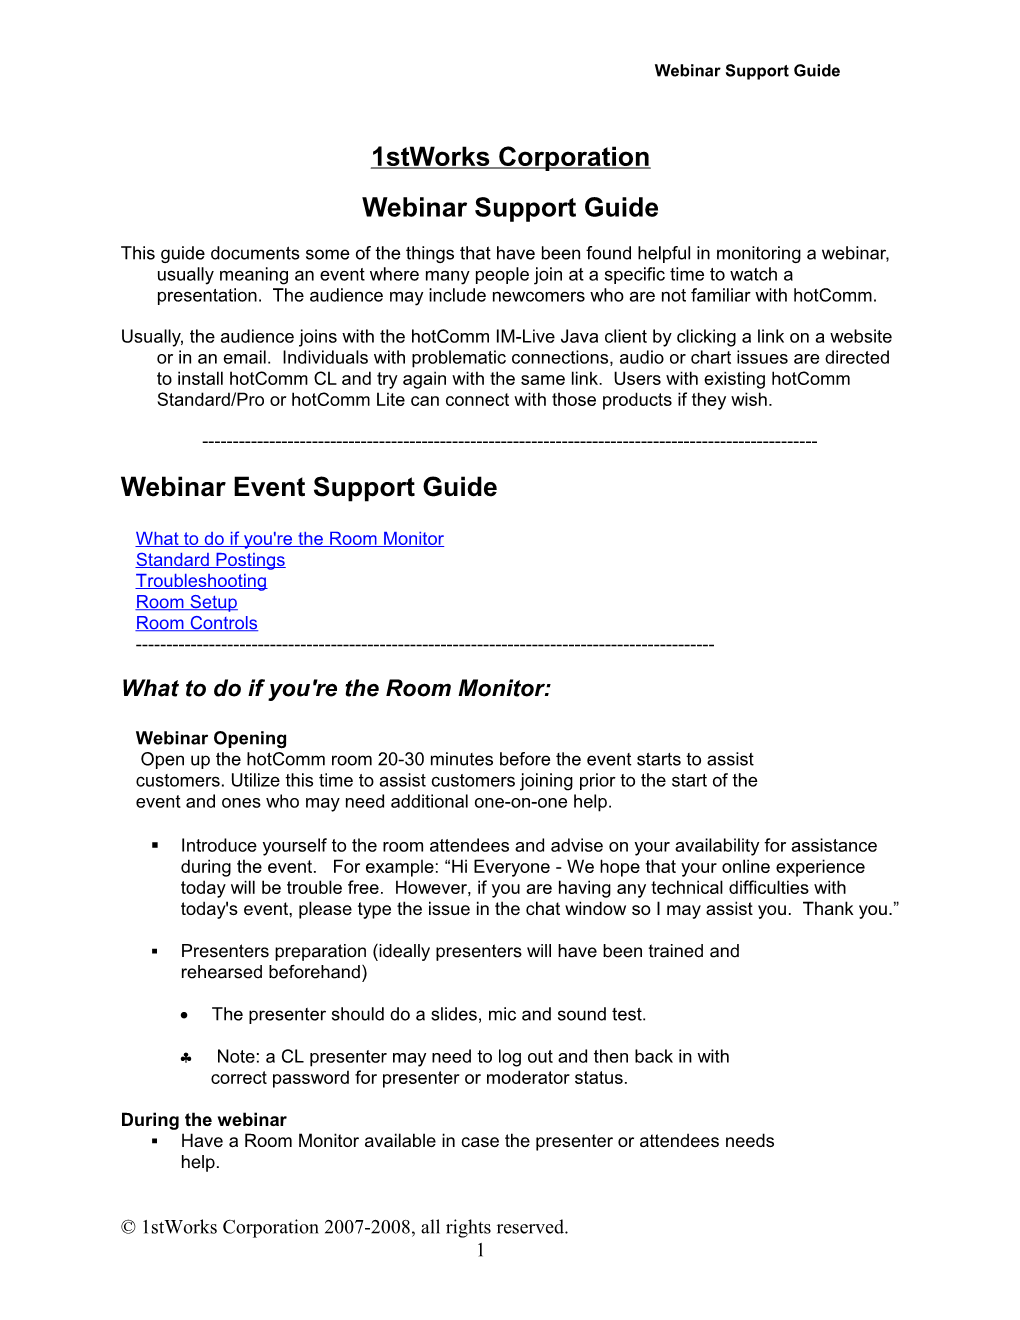 1Stworks Webinar Support Guide